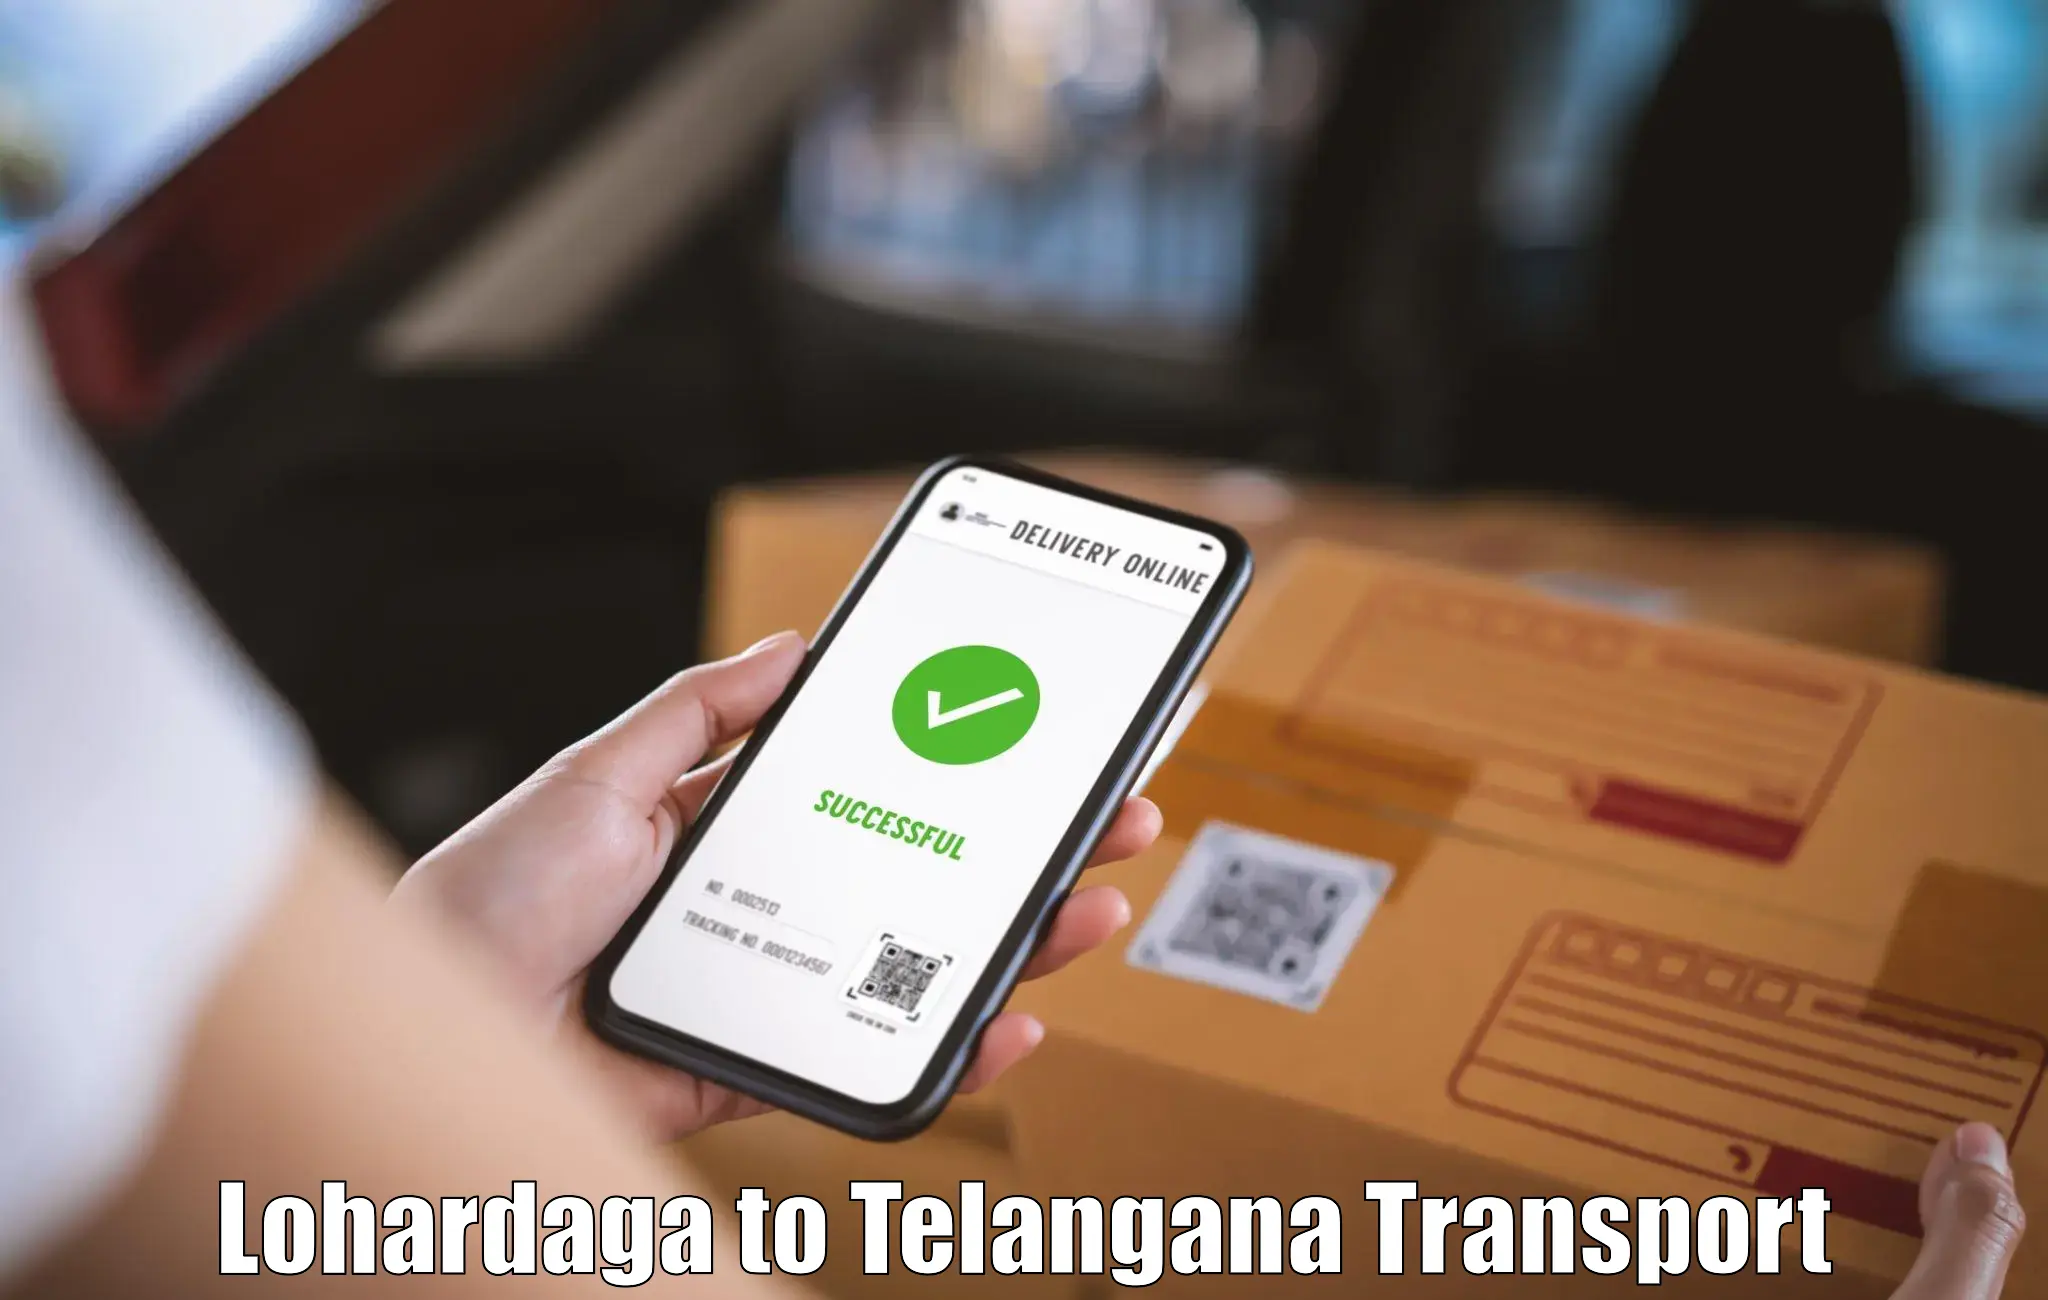 Air cargo transport services Lohardaga to Sikanderguda